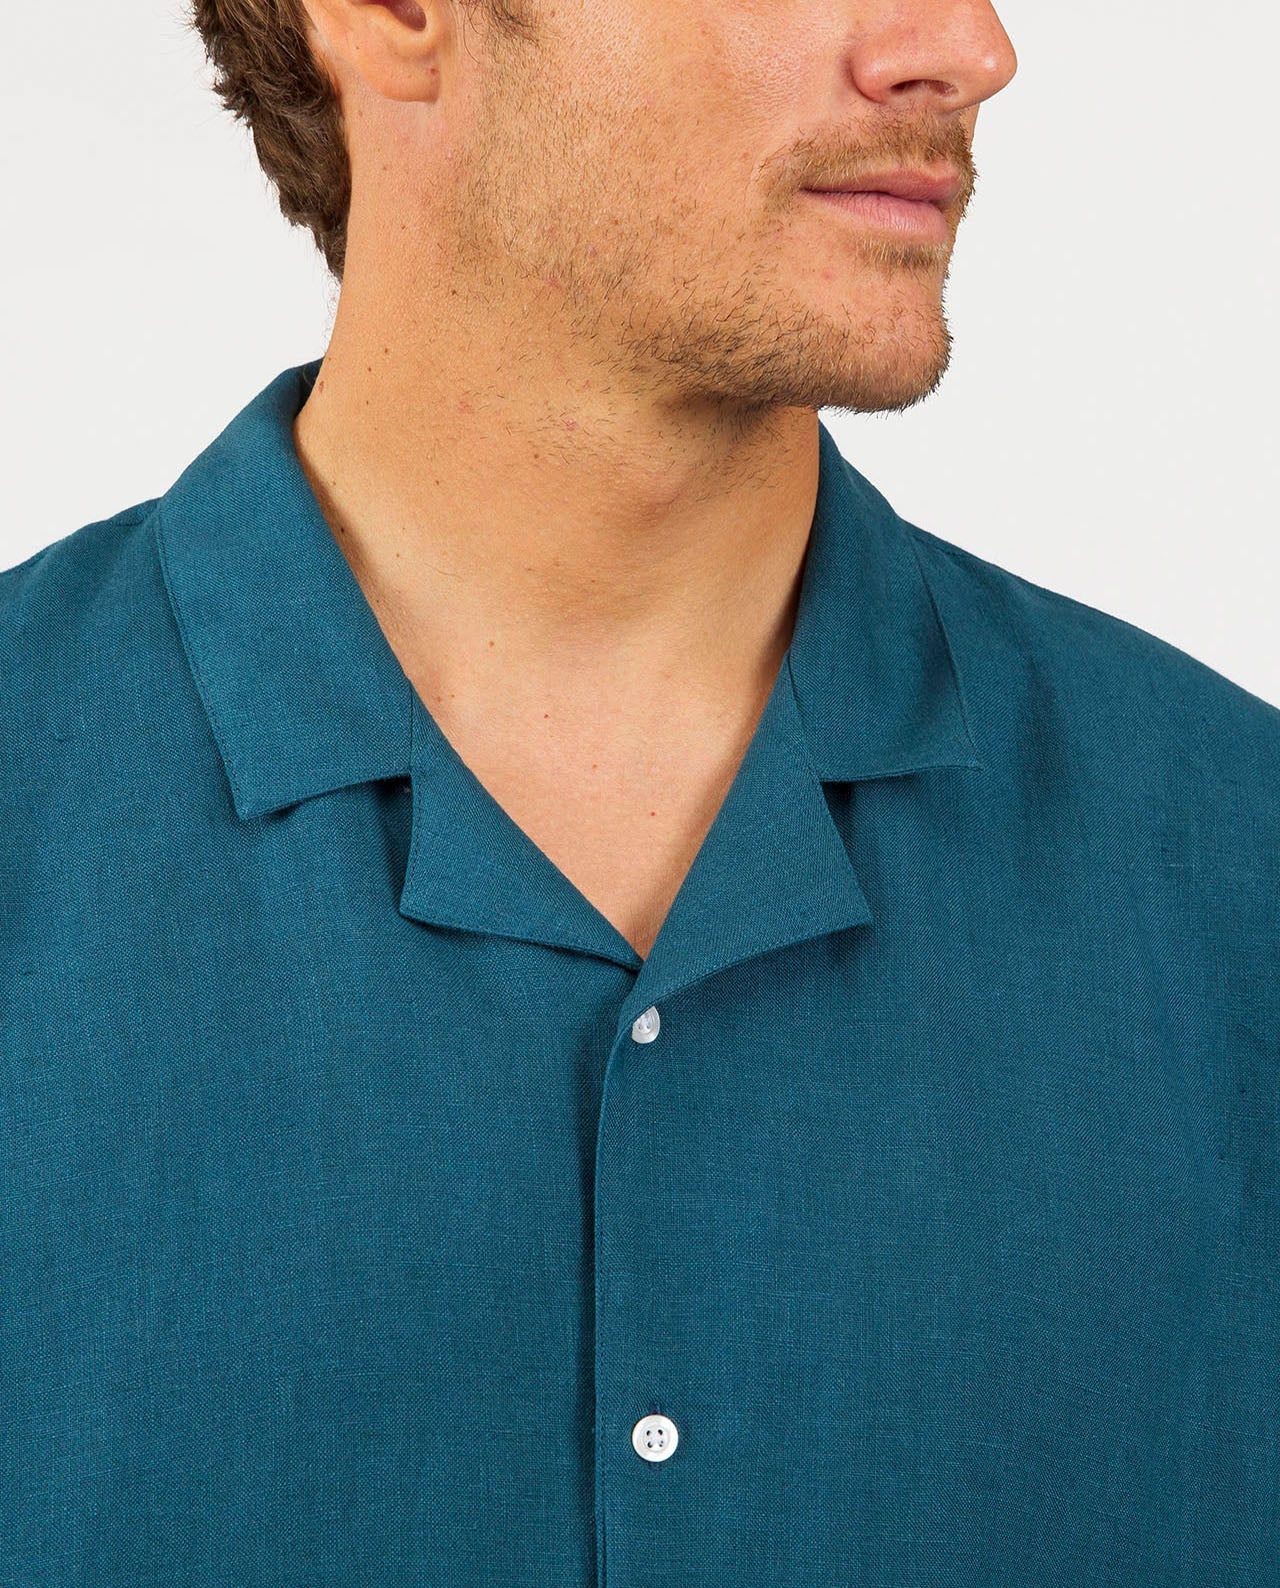 marché commun noyoco chemise homme manches courtes lin bleu pétrole